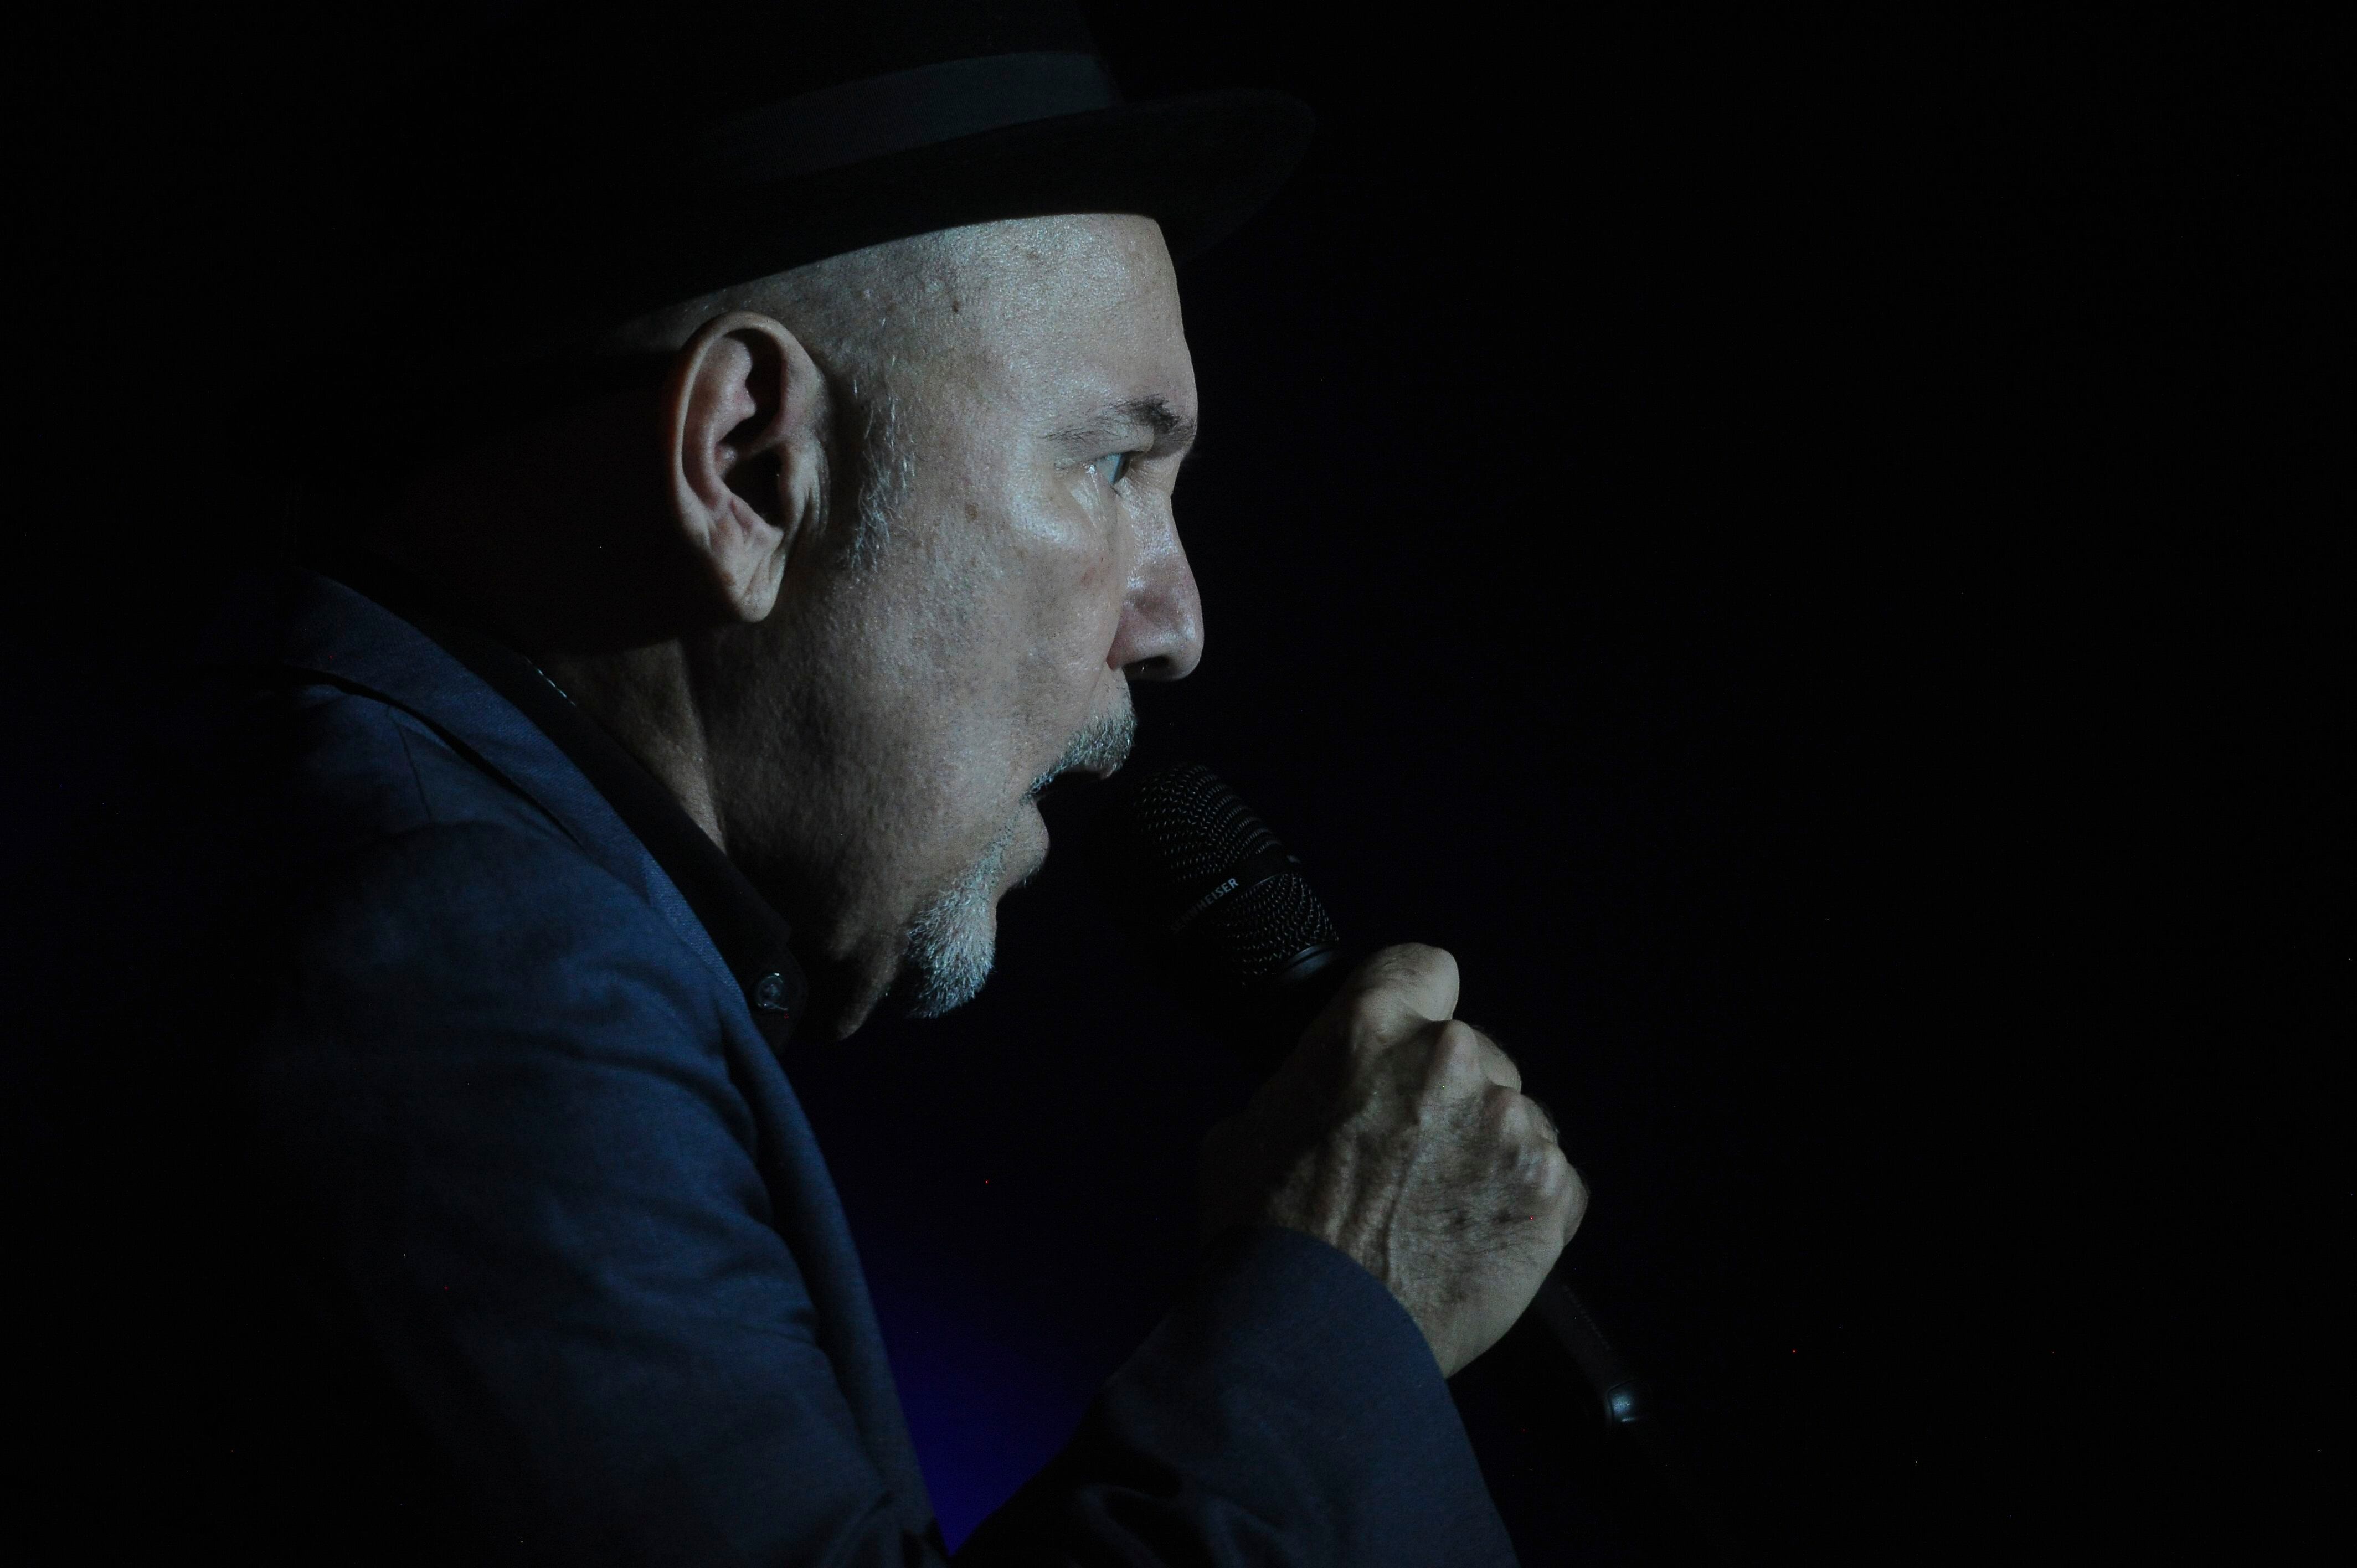 Rubén Blades, cantautor panameño ganador de varios premios Grammy y Latin Grammy, cumplió con las expectativas del show.

